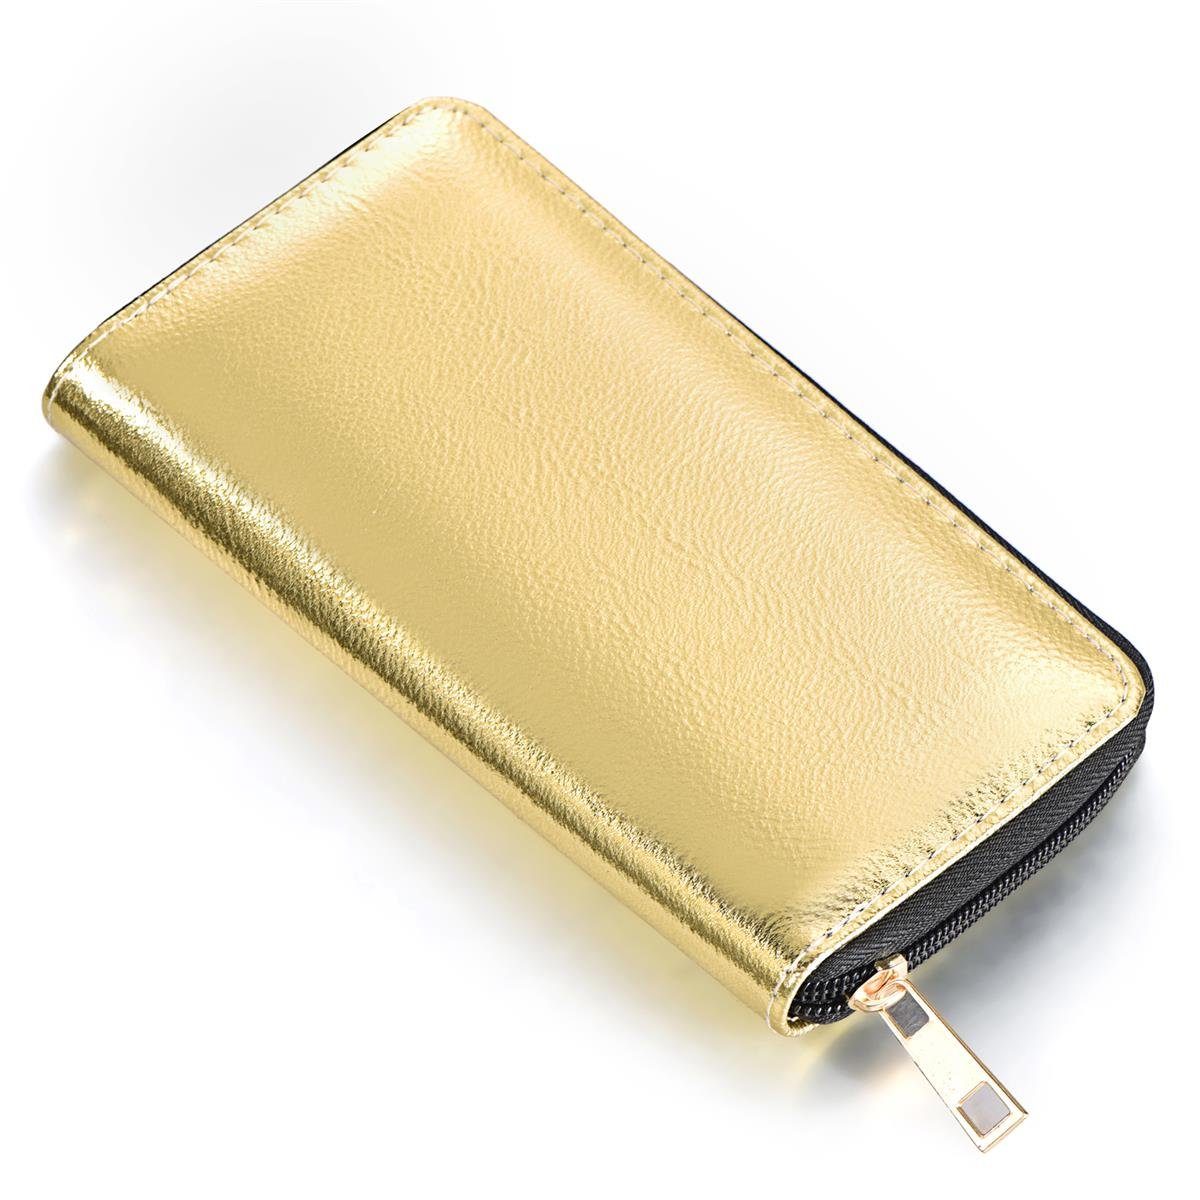 DonDon Geldbörse Portemonnaie Geldbeutel weich 20 x 10 x 2,5 cm (Packung, 1-tlg), Geldbörse für Damen und Mädchen, Metallic-Look, mit Reißverschluss gold metallic